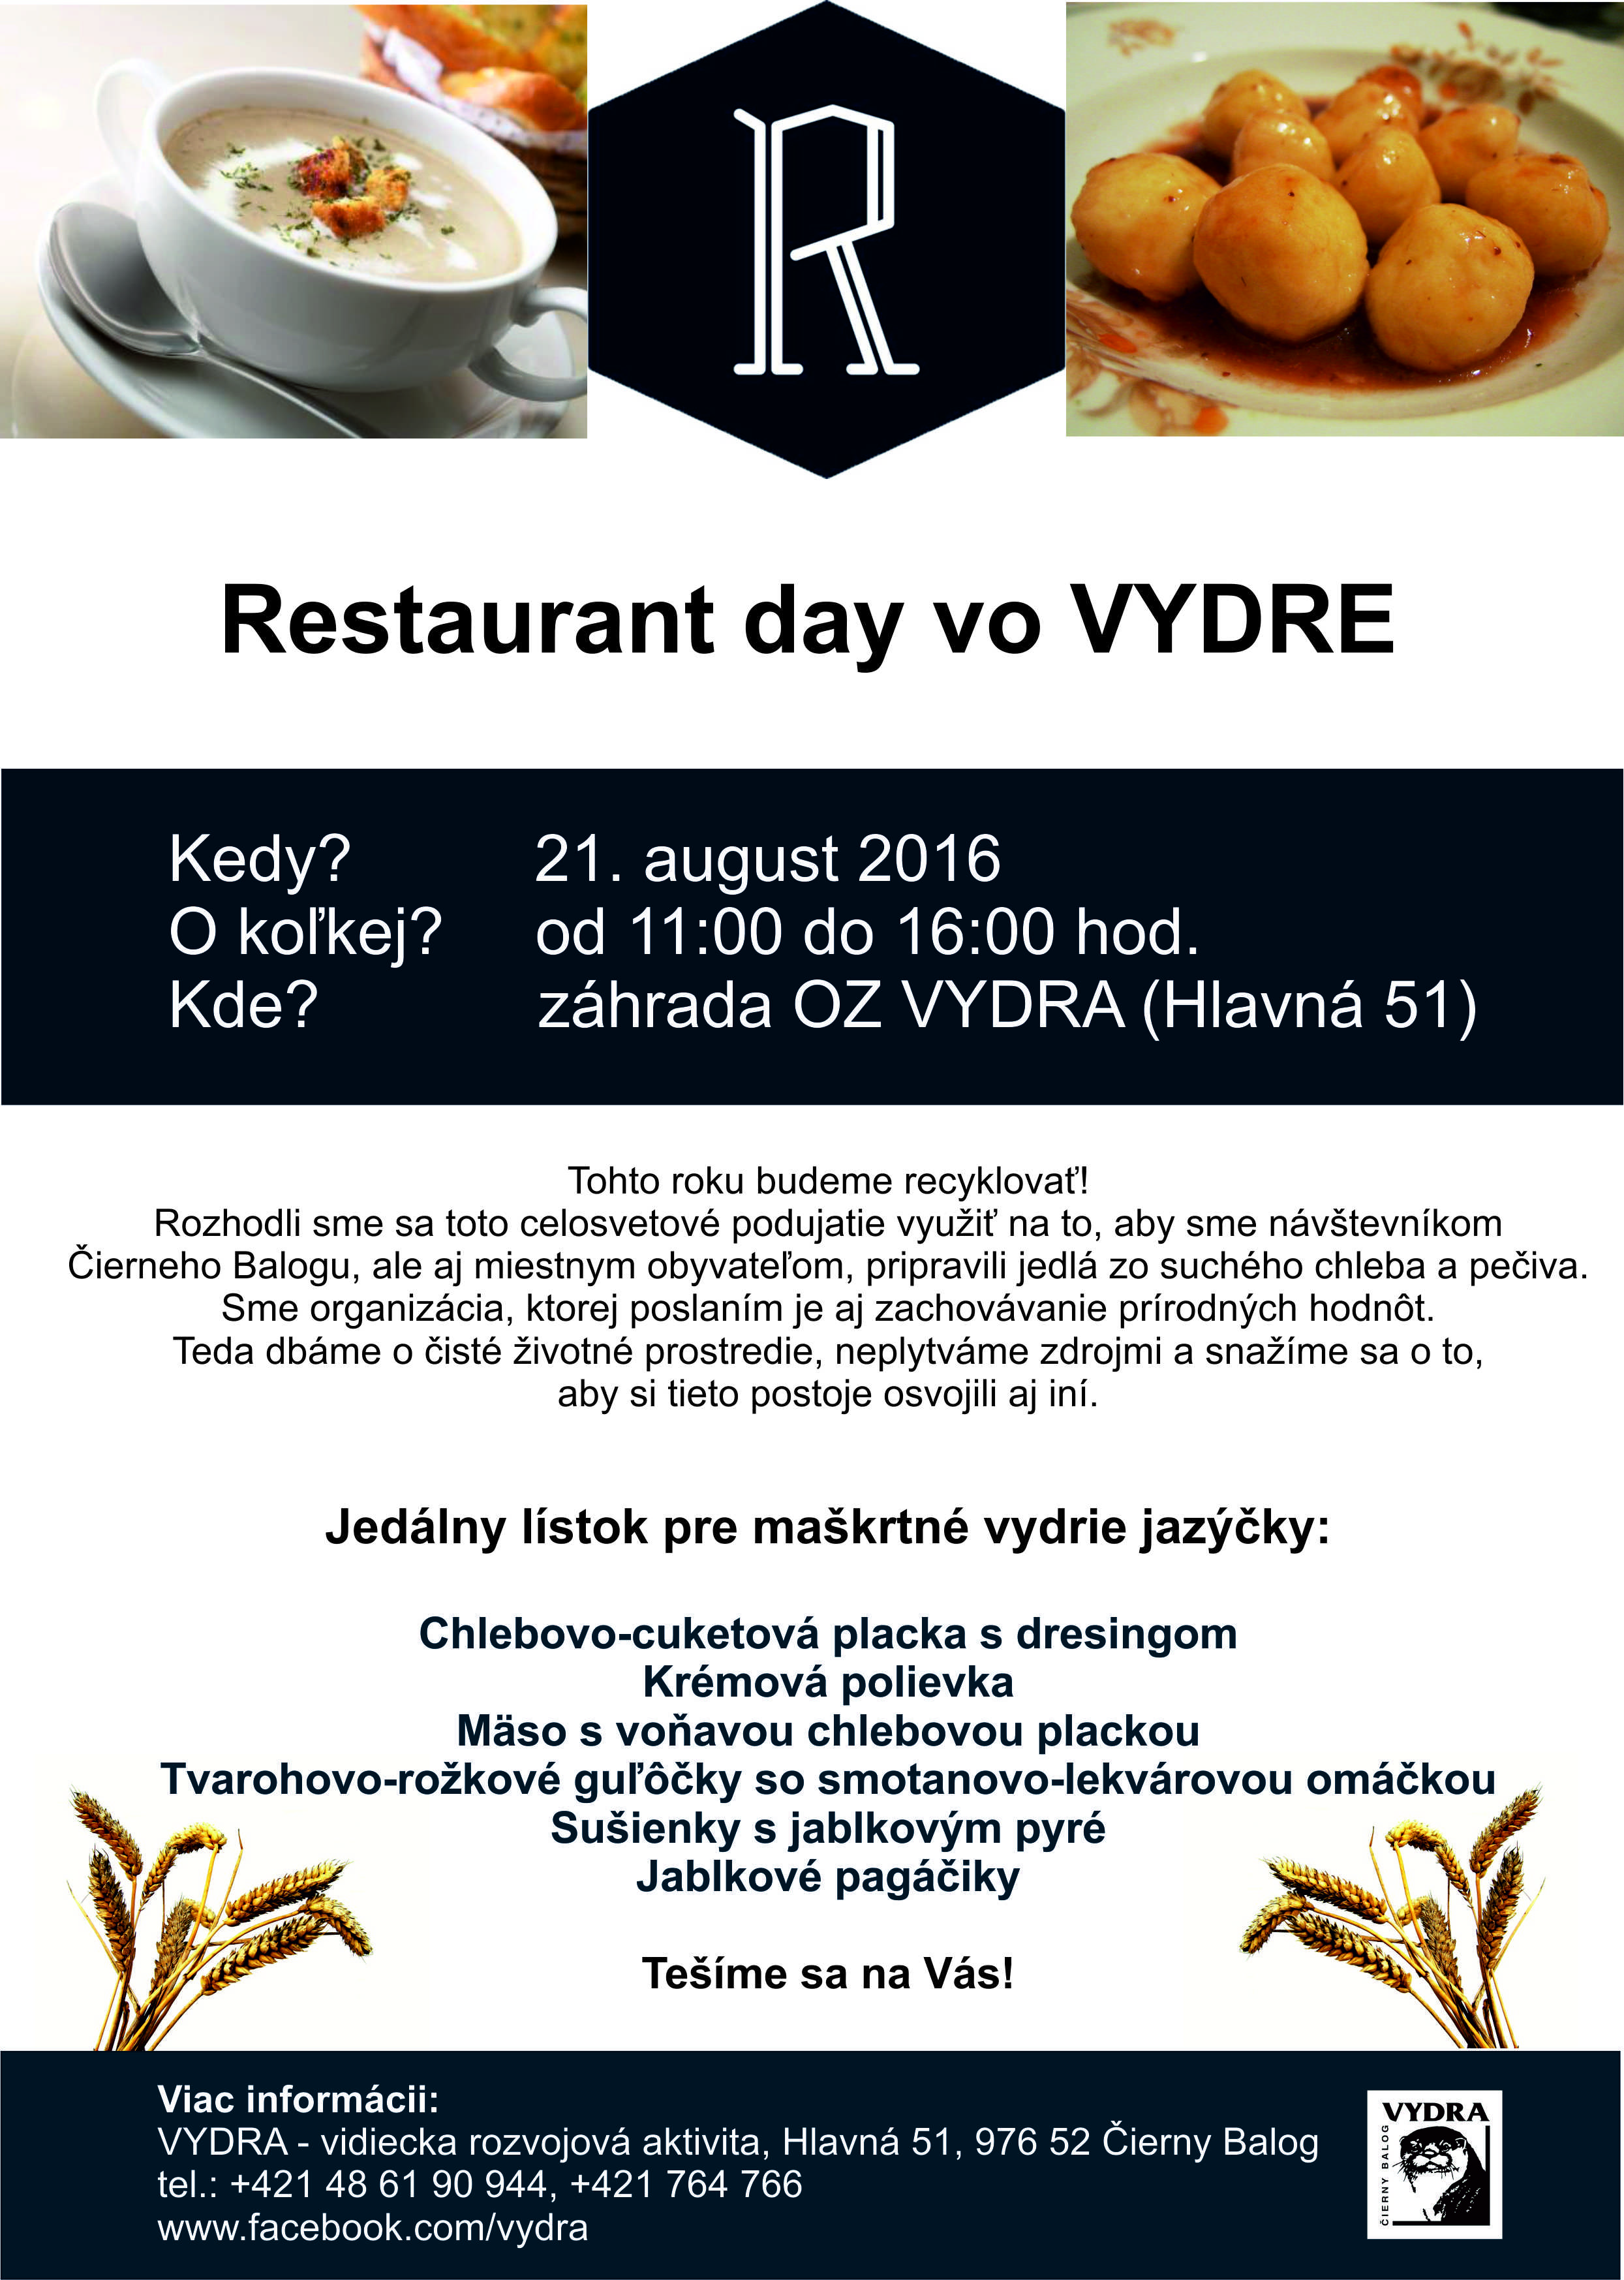 Restaurant day vo VYDRE Čierny Balog 2016